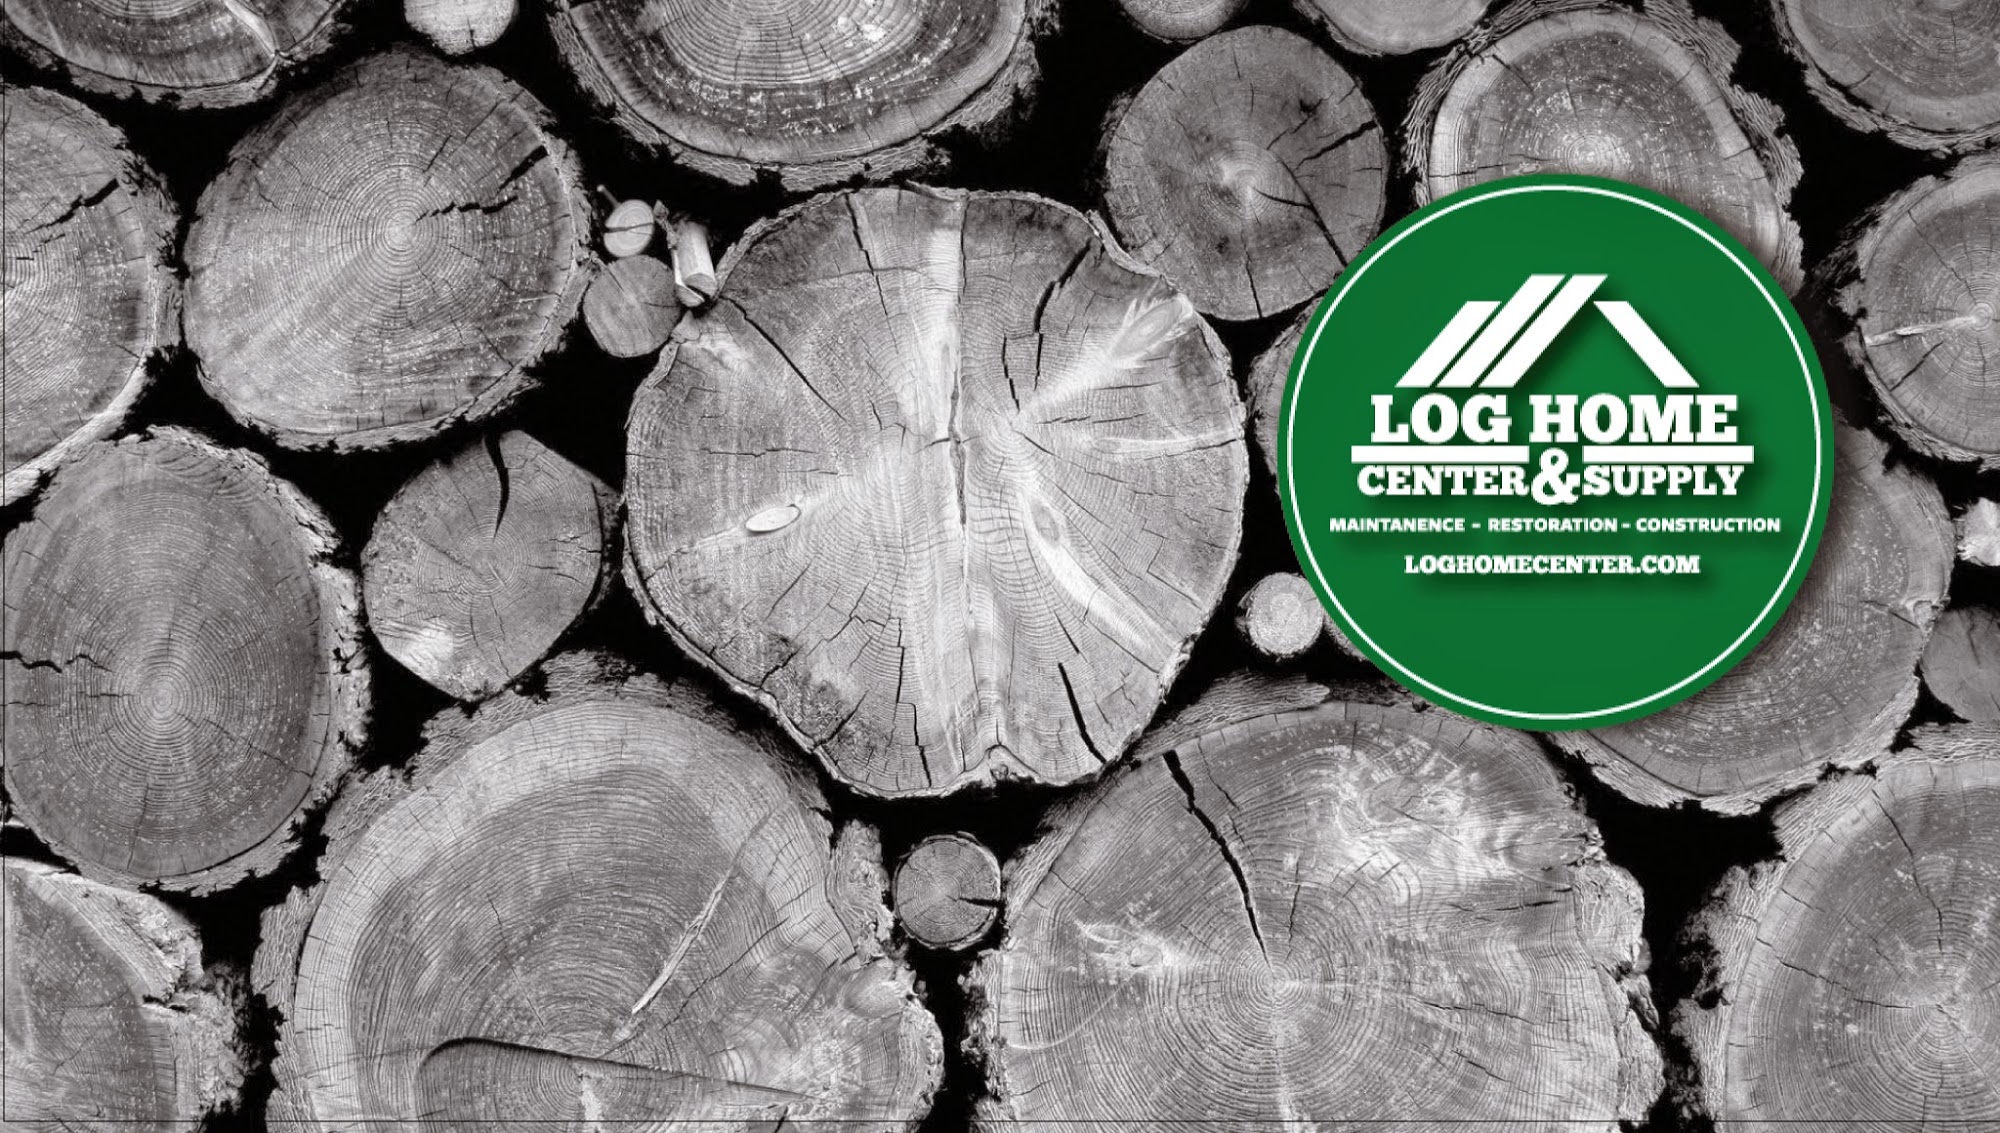 Log Home Center & Supply